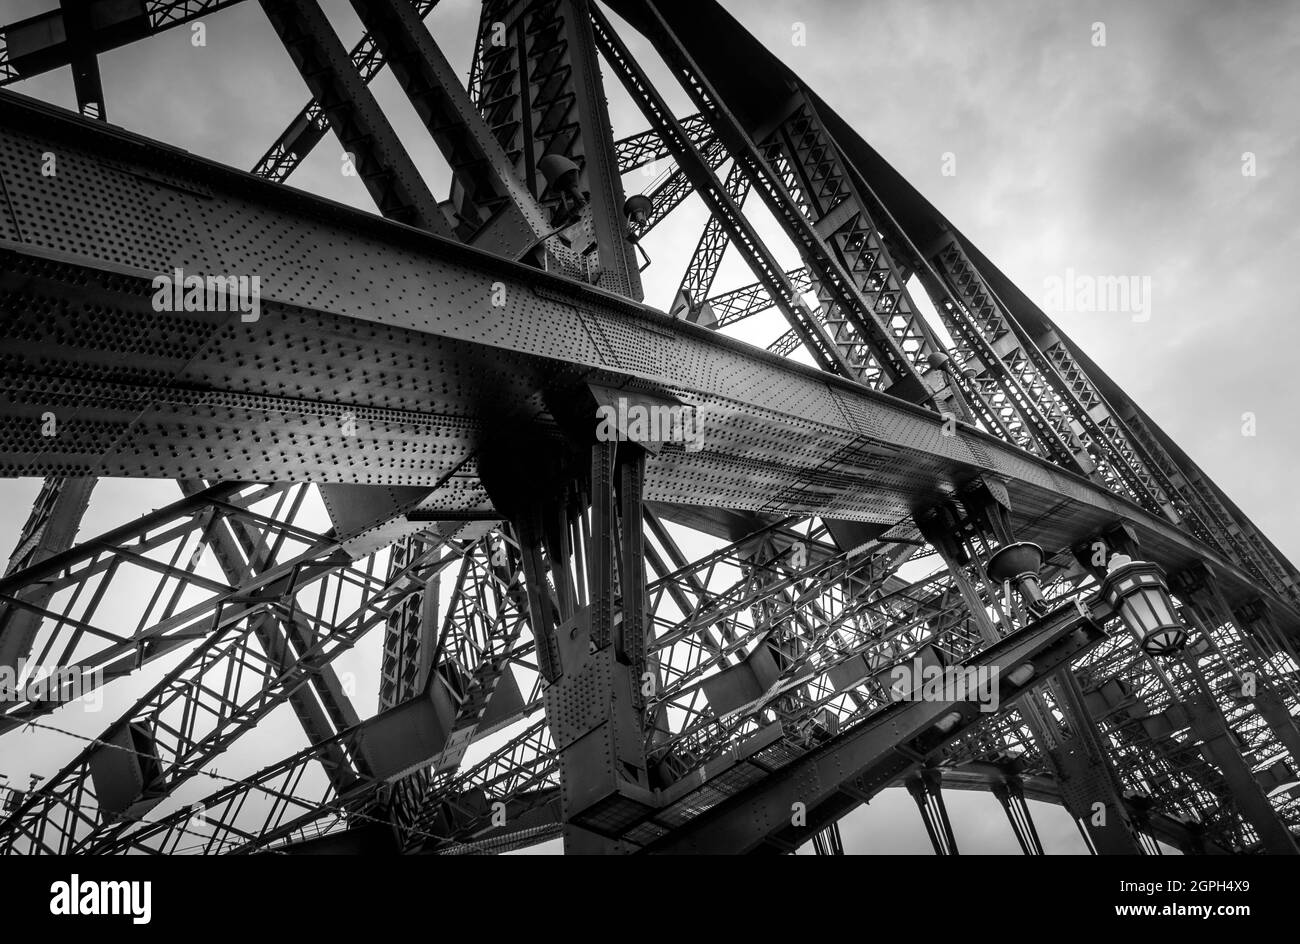 Immagine di dettaglio in bianco e nero sul ponte del porto di Sydney che mostra la struttura con rivetti. Nessuna gente. Foto Stock